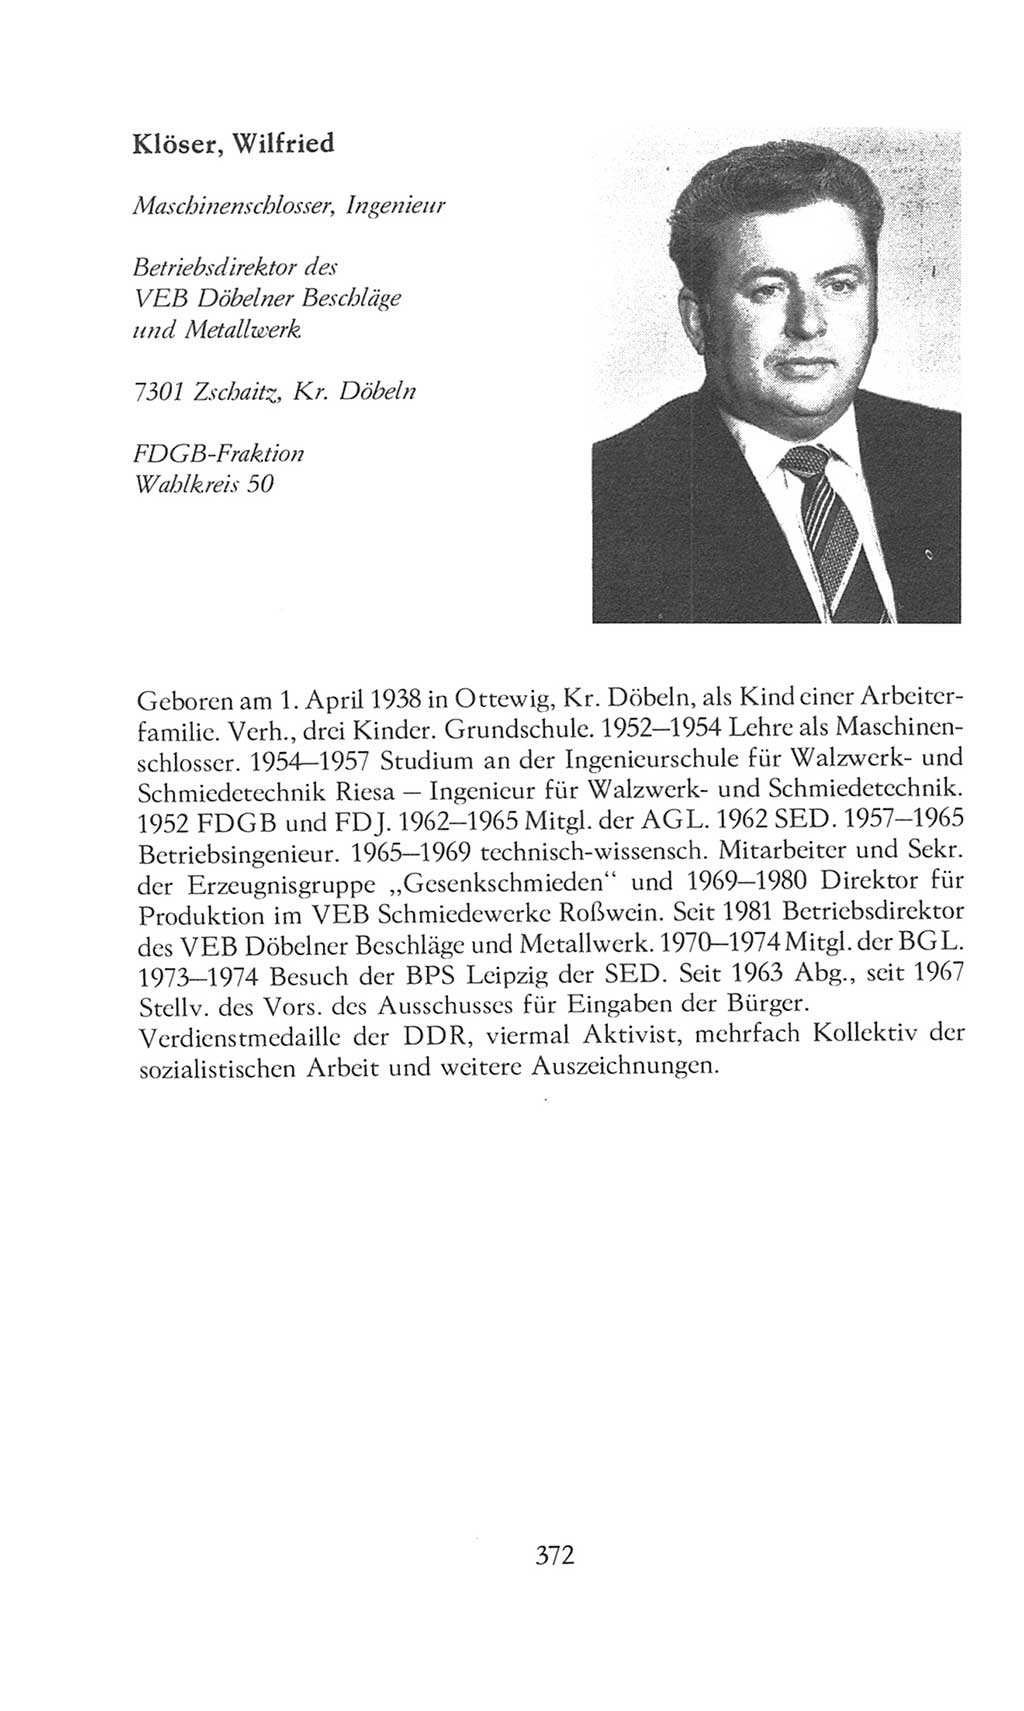 Volkskammer (VK) der Deutschen Demokratischen Republik (DDR), 8. Wahlperiode 1981-1986, Seite 372 (VK. DDR 8. WP. 1981-1986, S. 372)